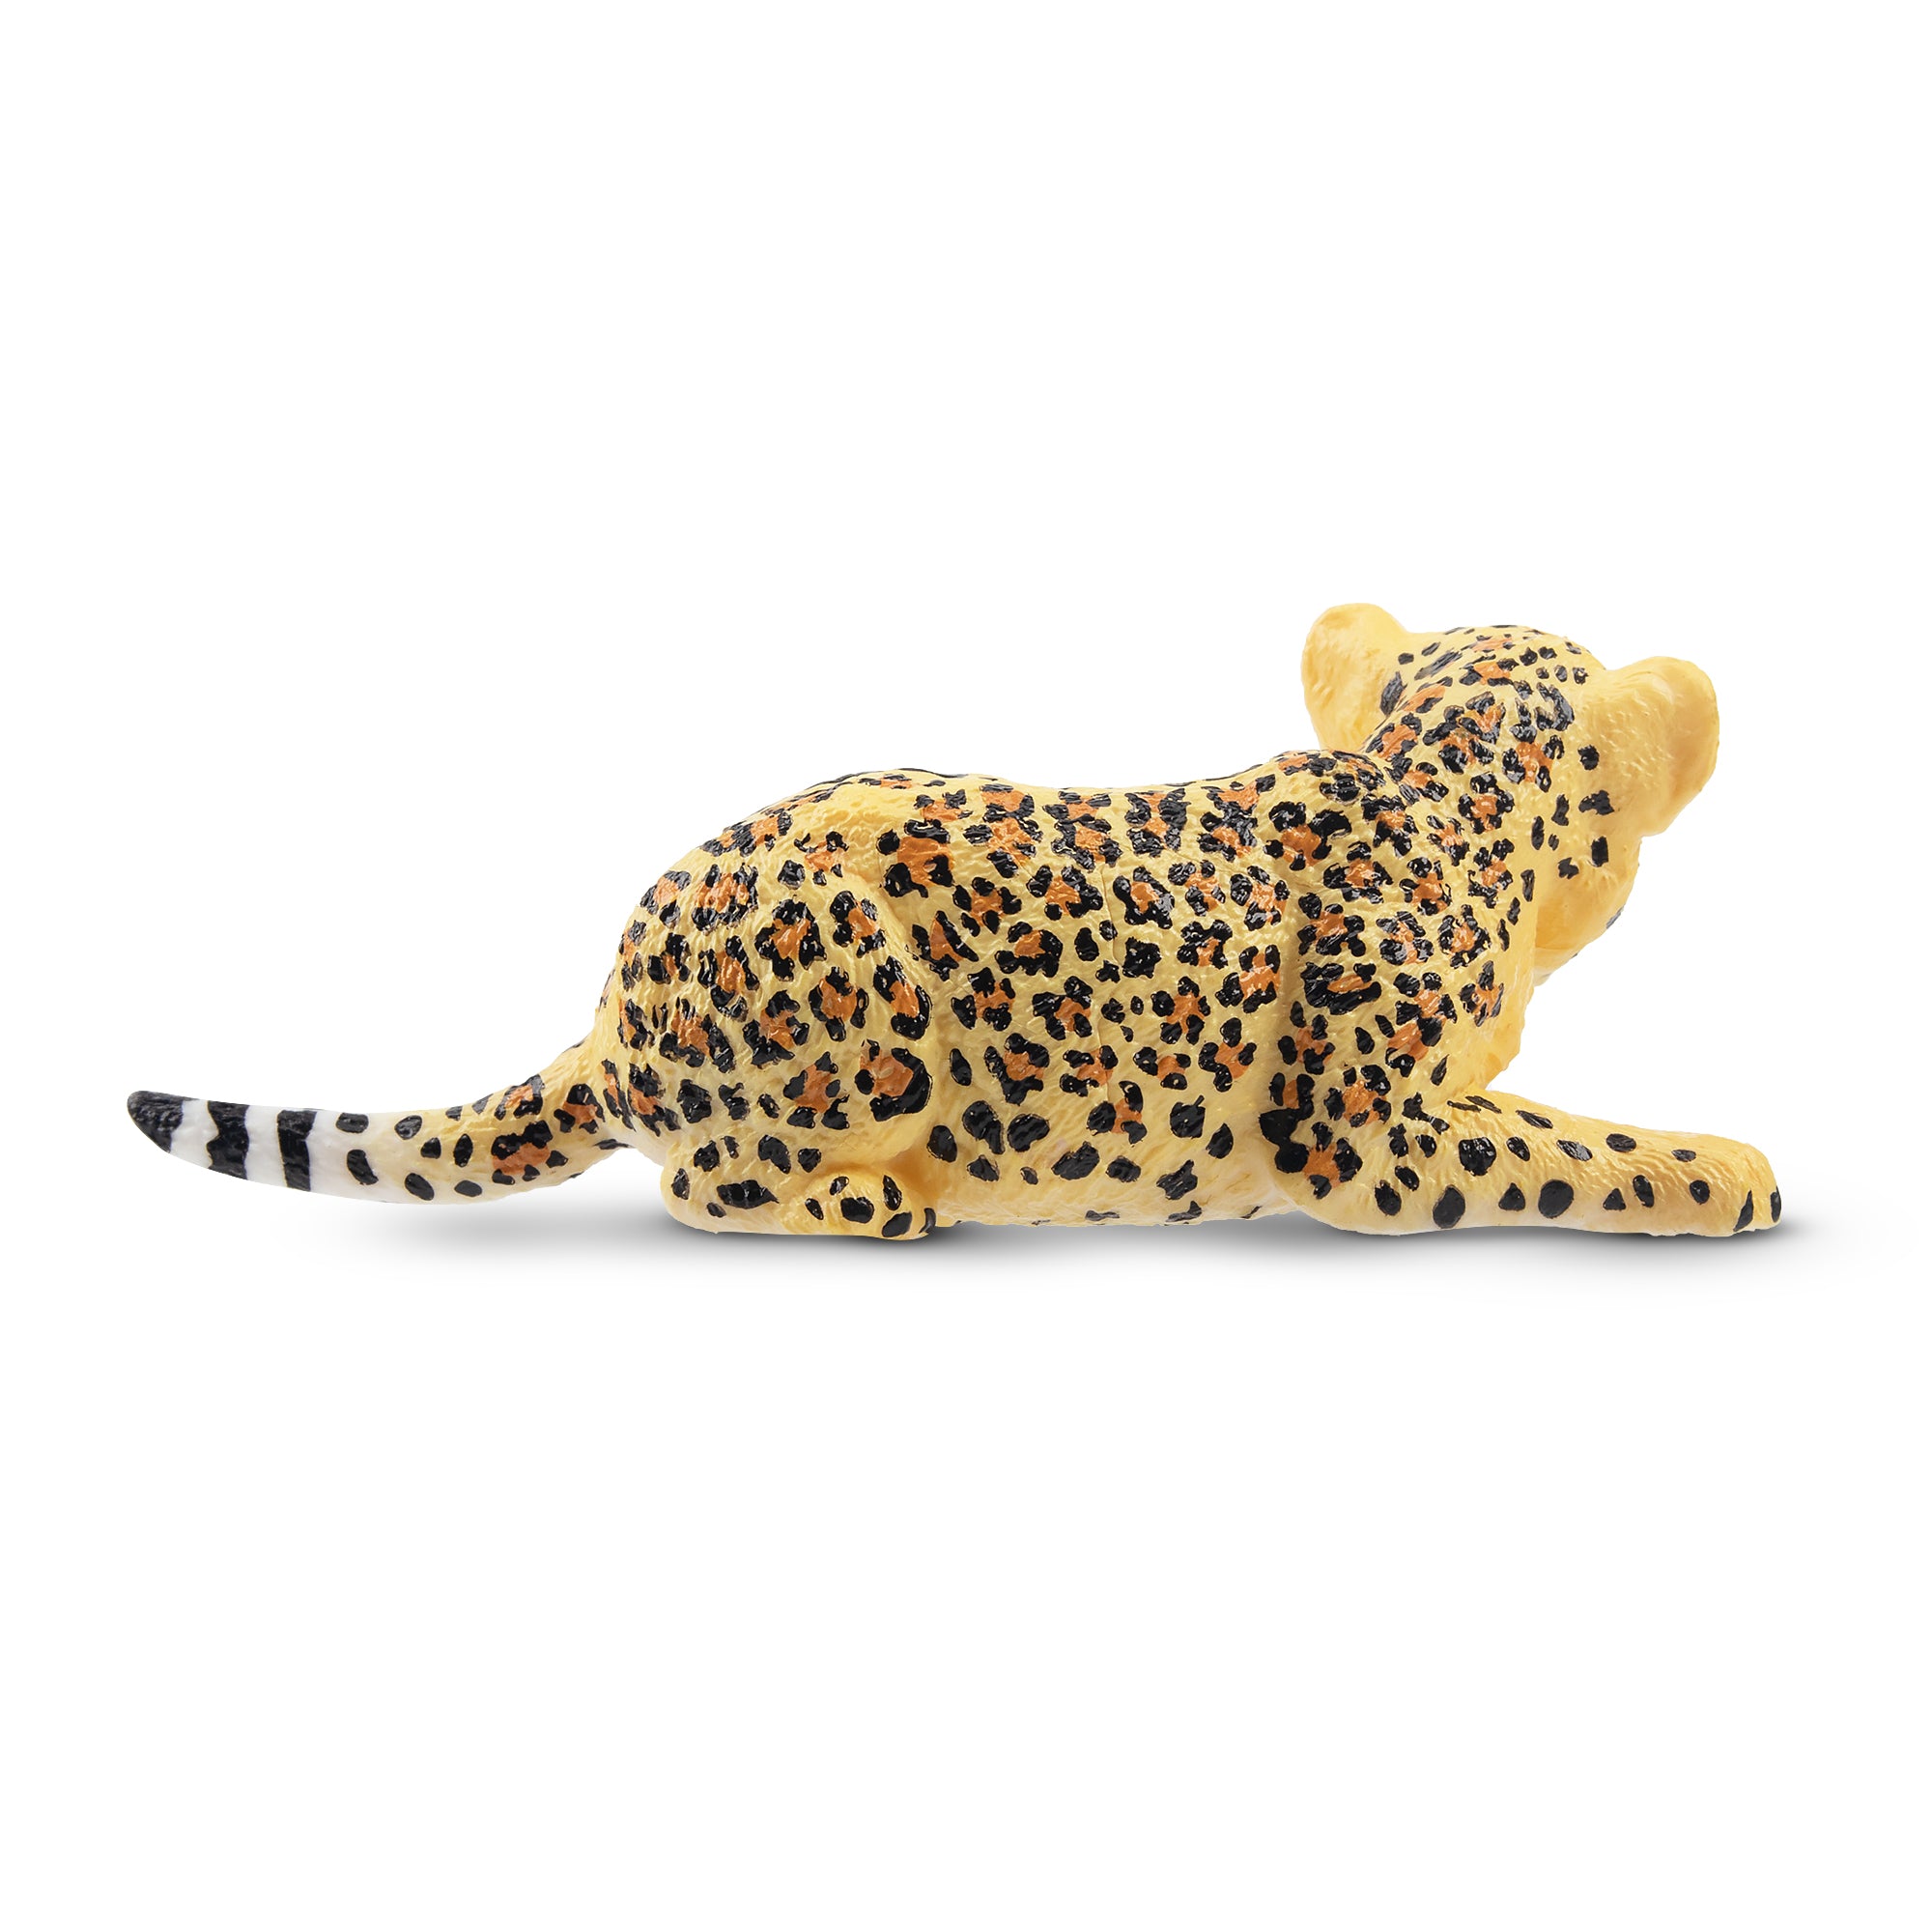 Toymany Lying Leopard Cub Figurine Toy-back